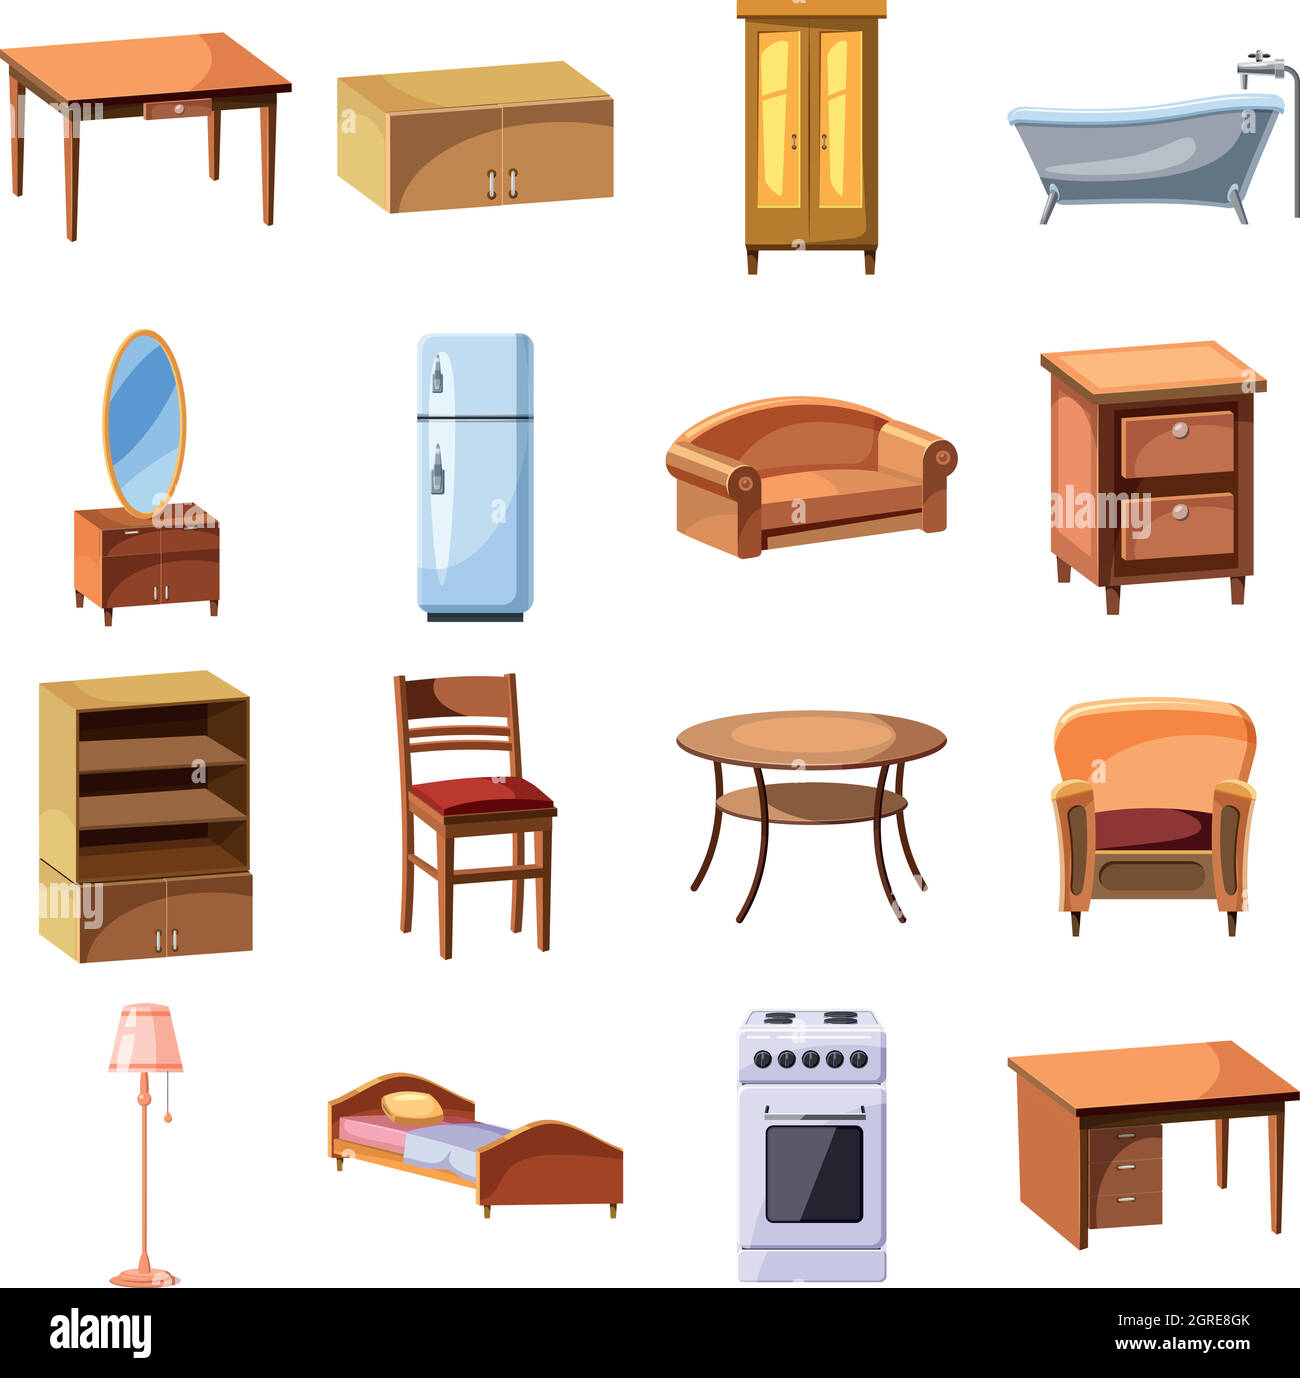 https://c8.alamy.com/compes/2gre8gk/muebles-y-electrodomesticos-conjunto-de-iconos-2gre8gk.jpg